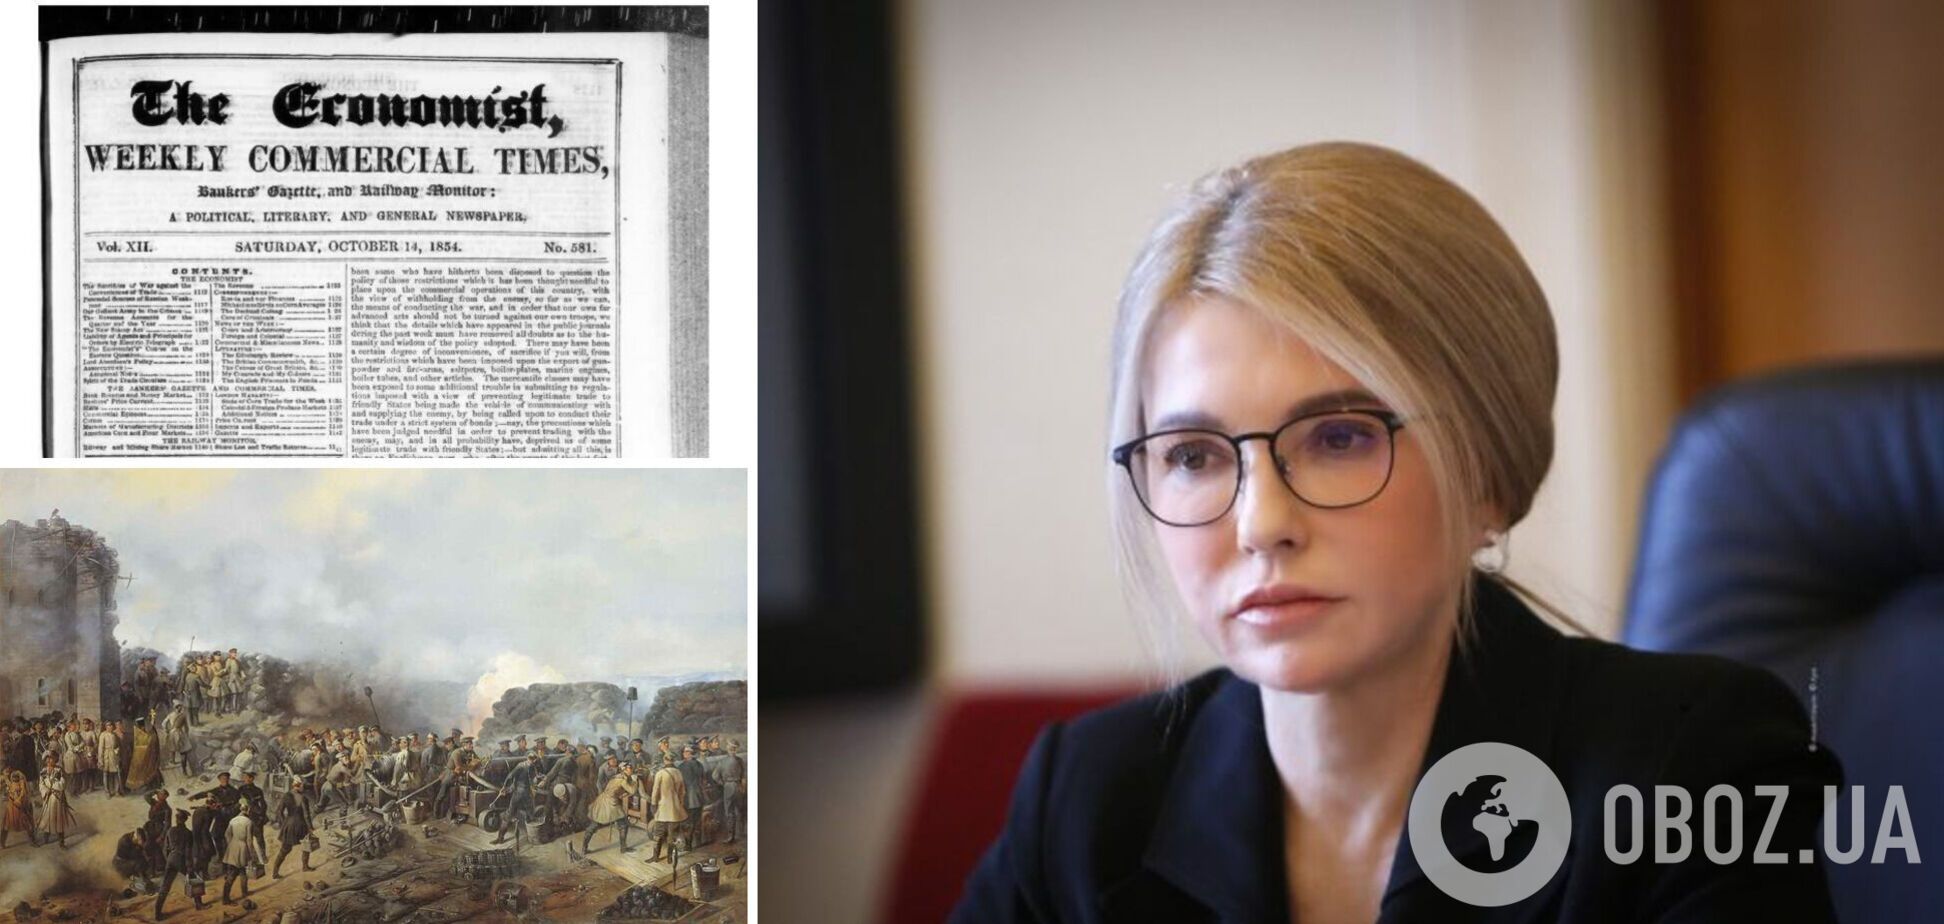 Тимошенко пригадала статтю The Economist від 1854 року і закликала Європу не боятися РФ